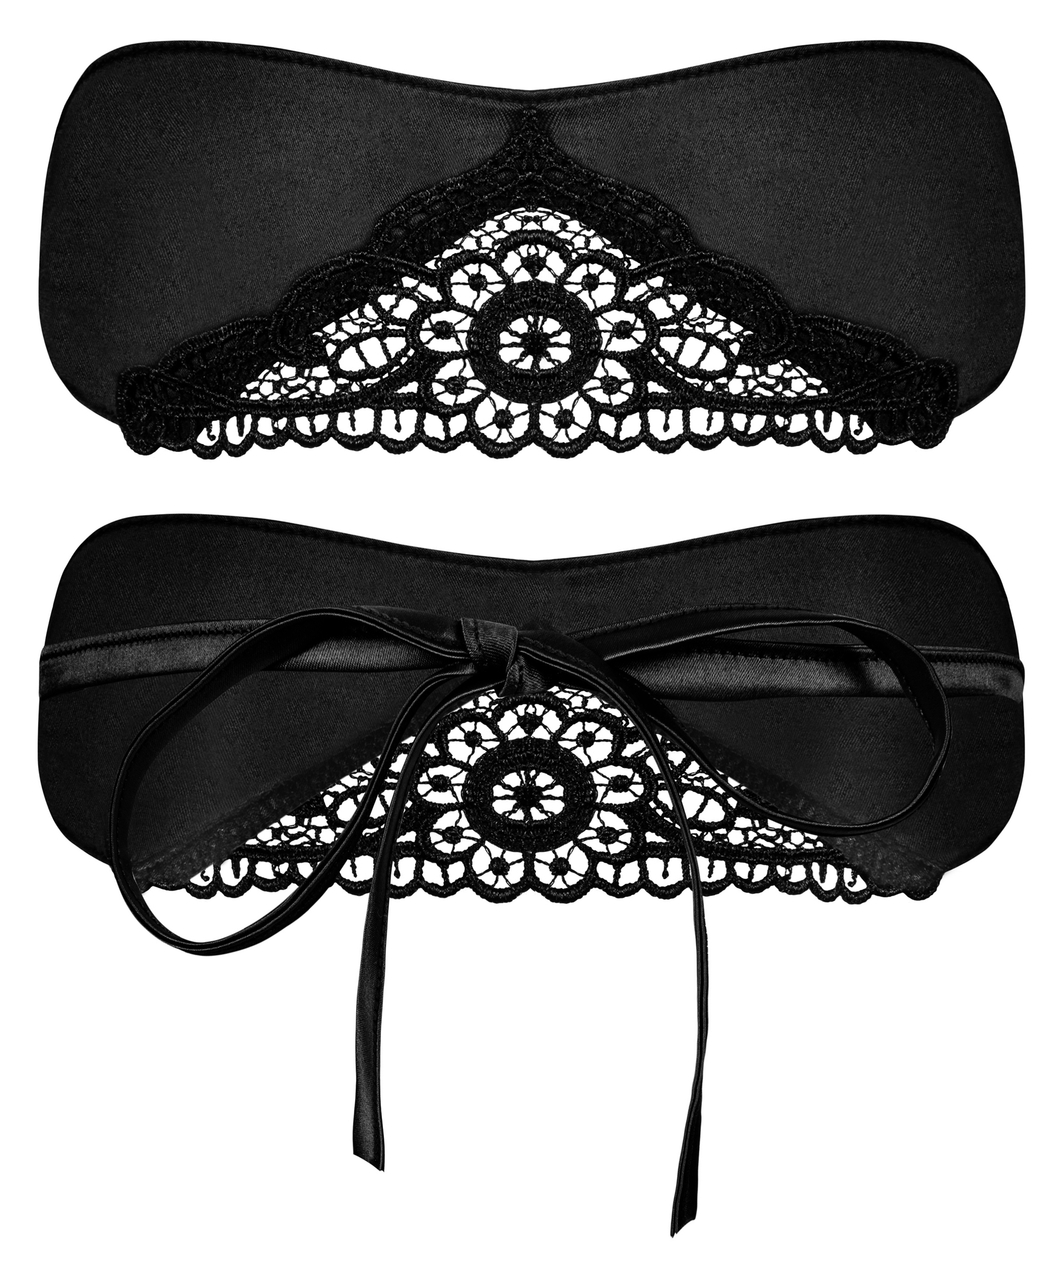 Obsessive black satin blindfold